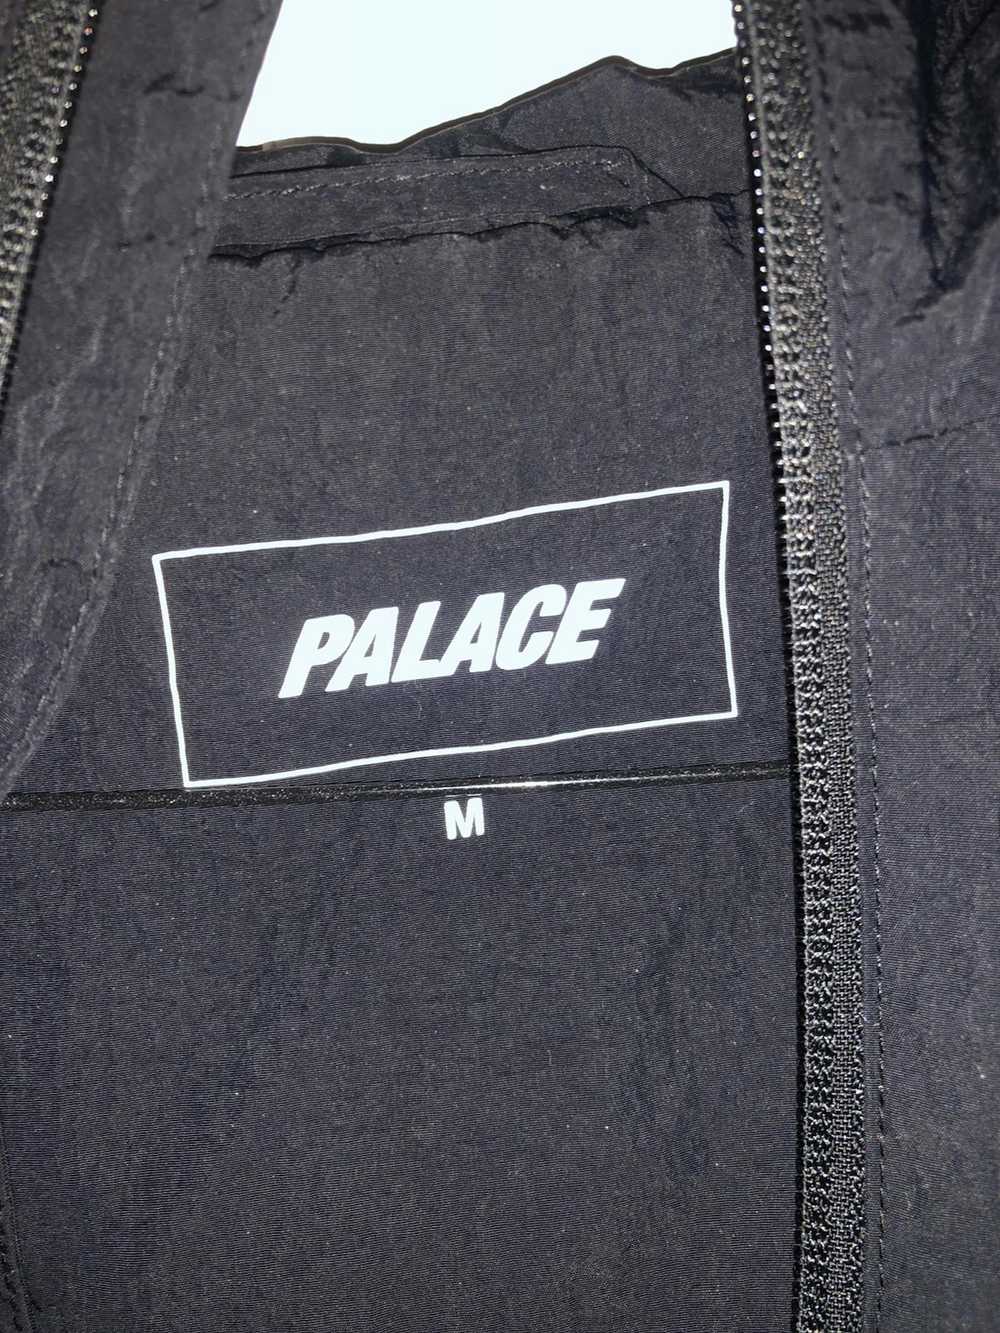 Palace Palace Ottoman Jacket - image 3